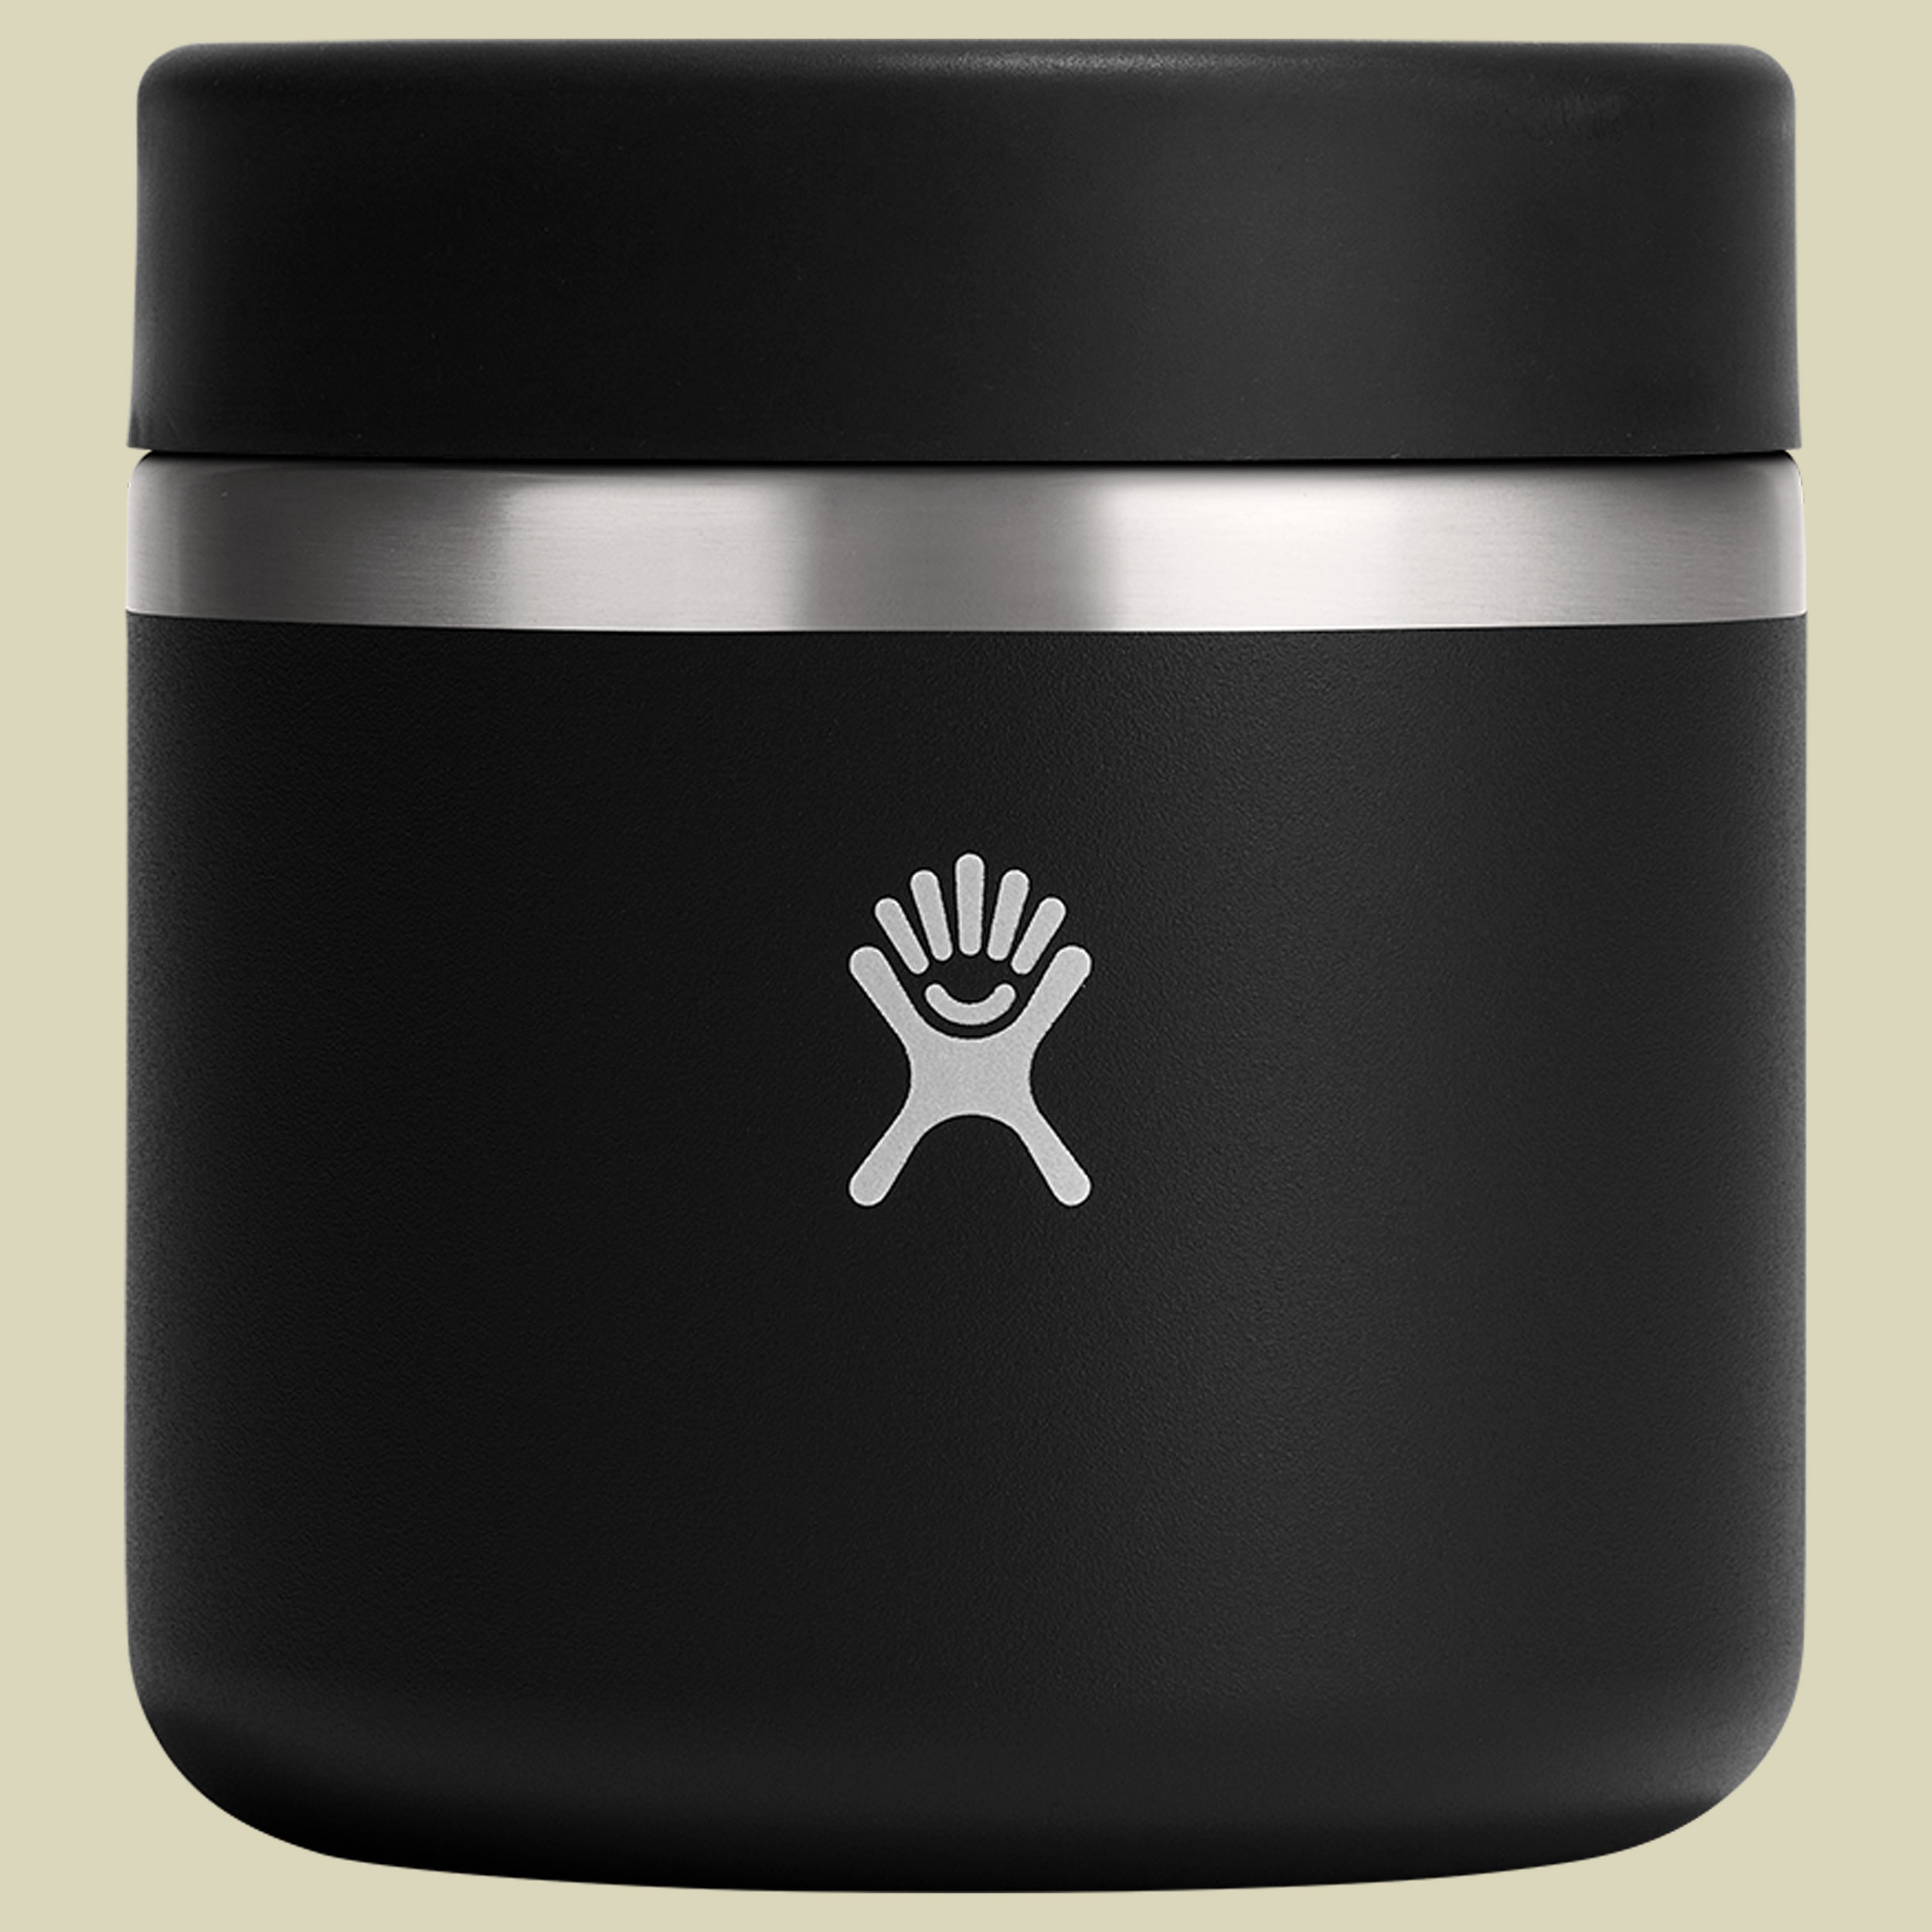 Hydro Flask 20 oz Insulated Food Jar schwarz 591 - Farbe black